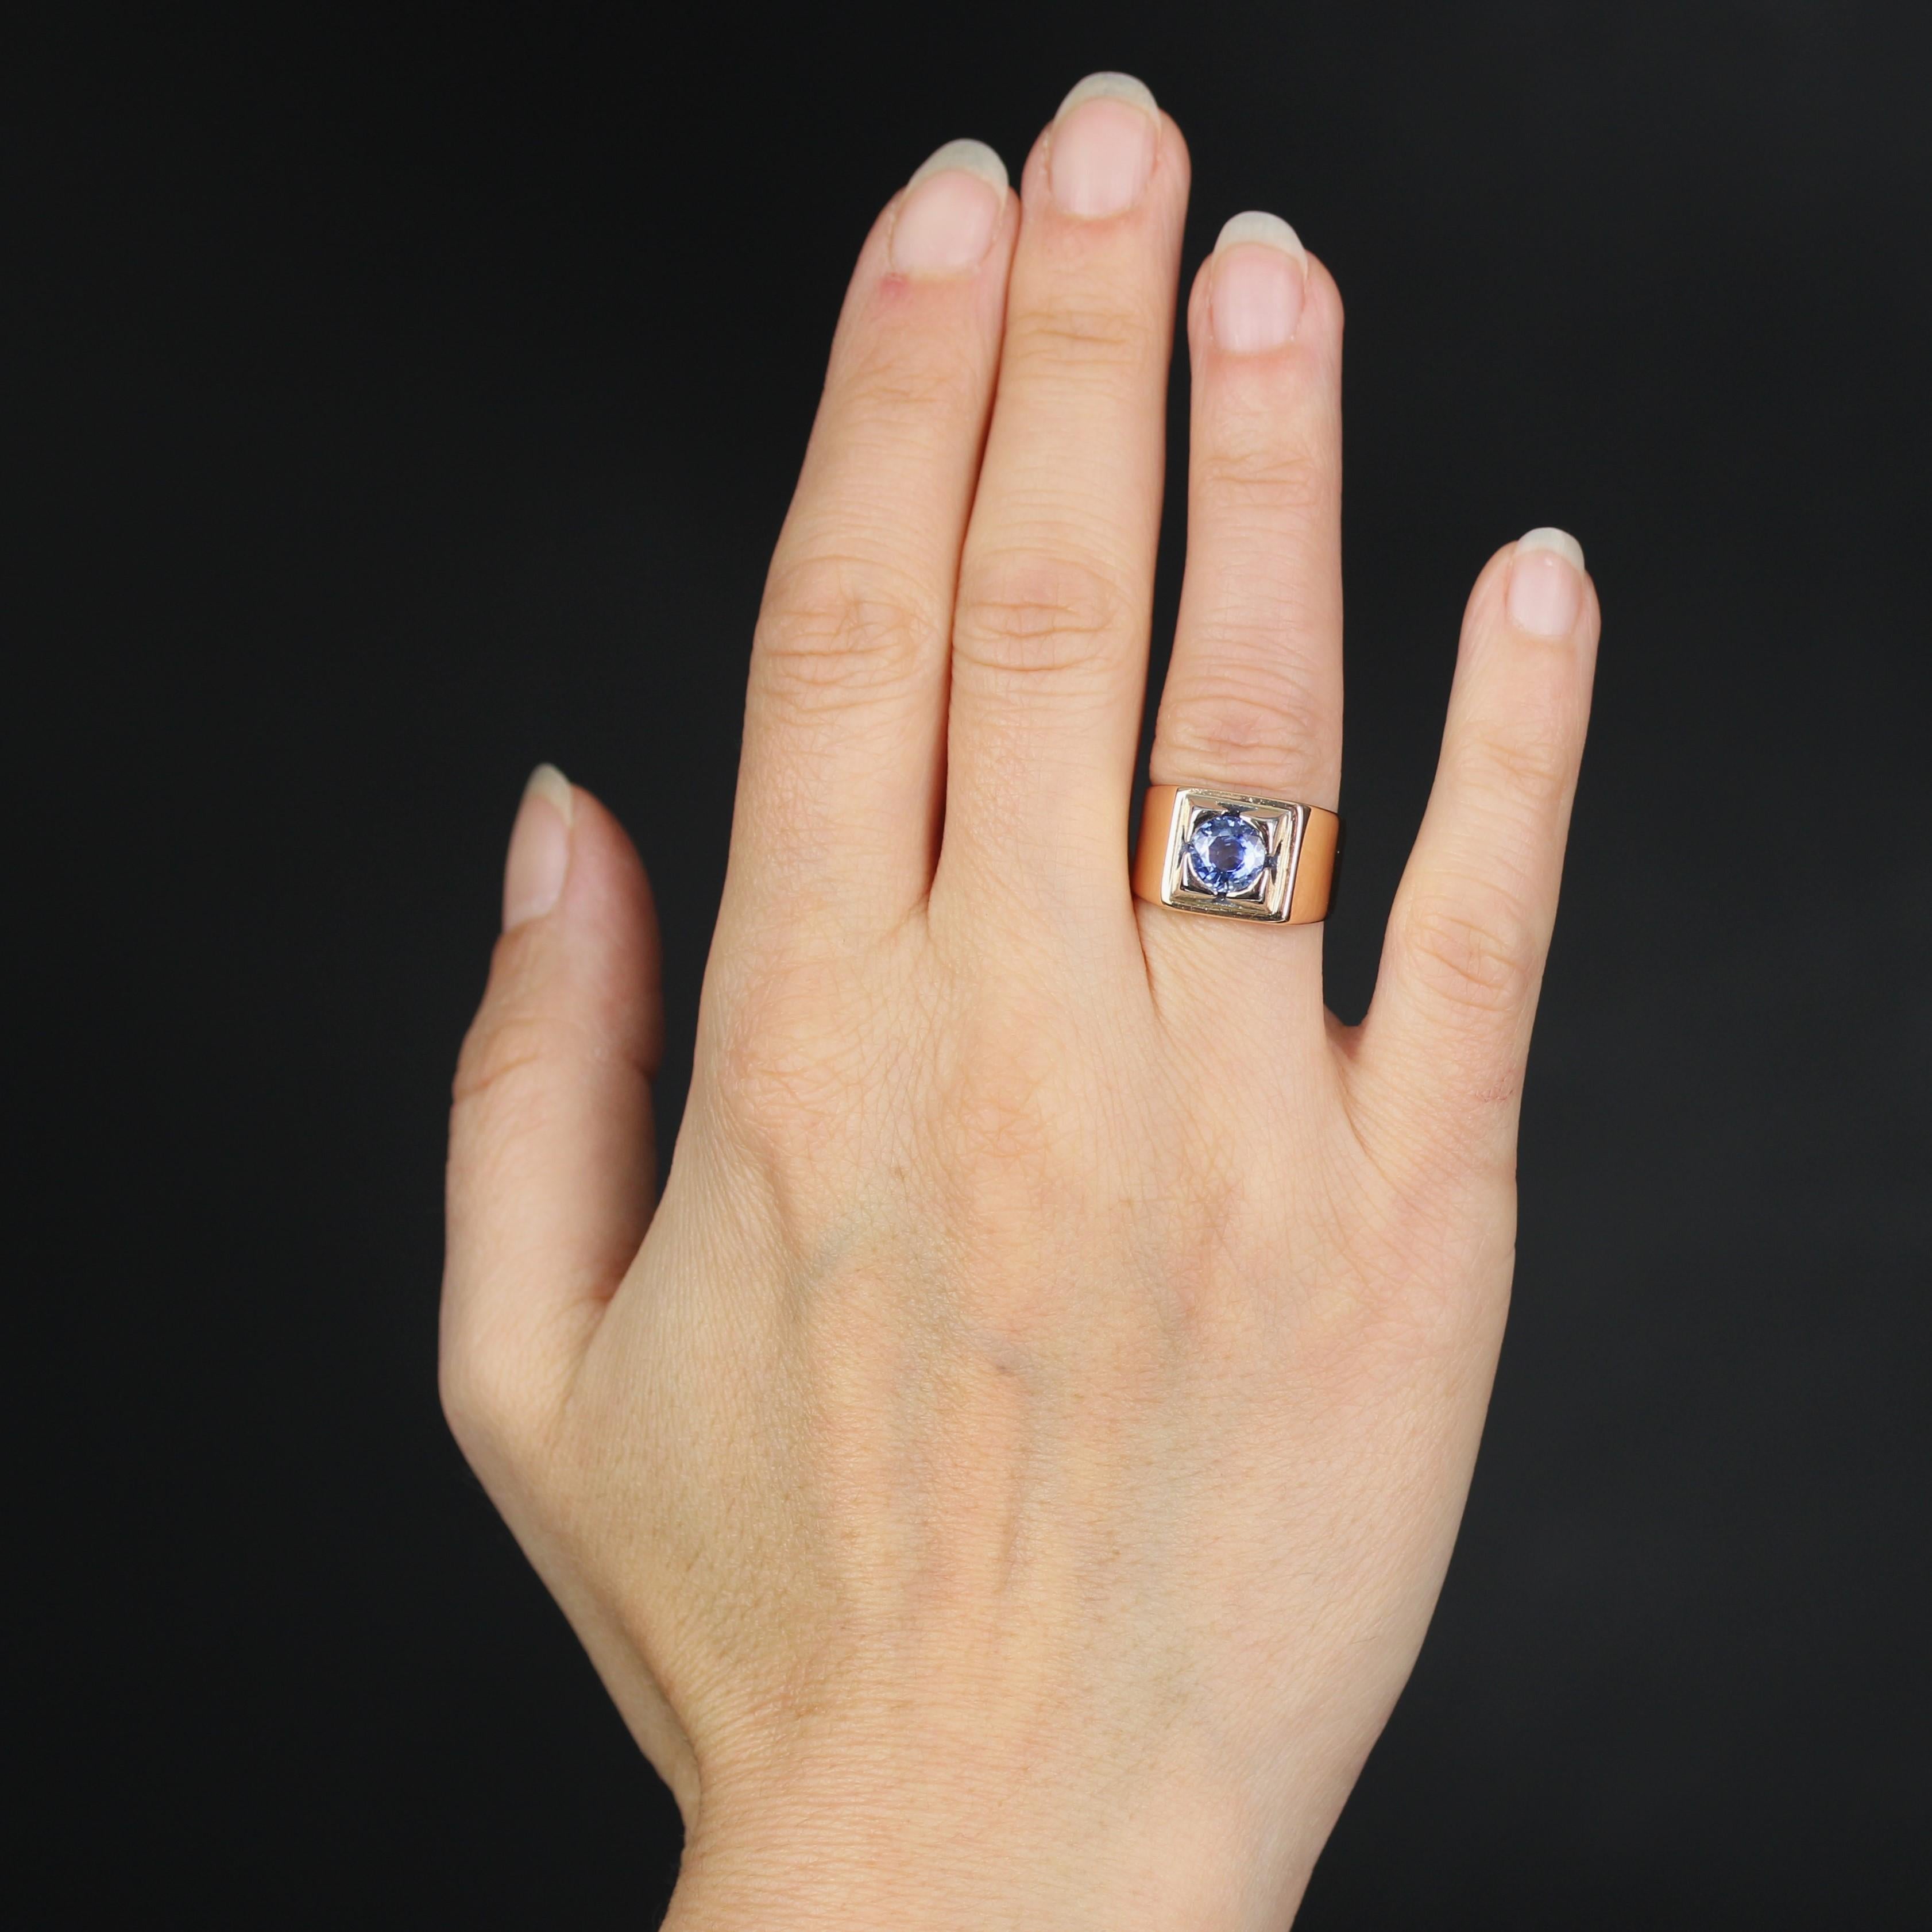 Bague en or jaune 18 carats et en platine.
Cette magnifique chevalière présente un large anneau plat orné d'un saphir bleu clair intense.
Poids total du saphir : 1,18 carat environ.
Hauteur : 10,8 mm environ, largeur : 9,5 mm environ, épaisseur : 5